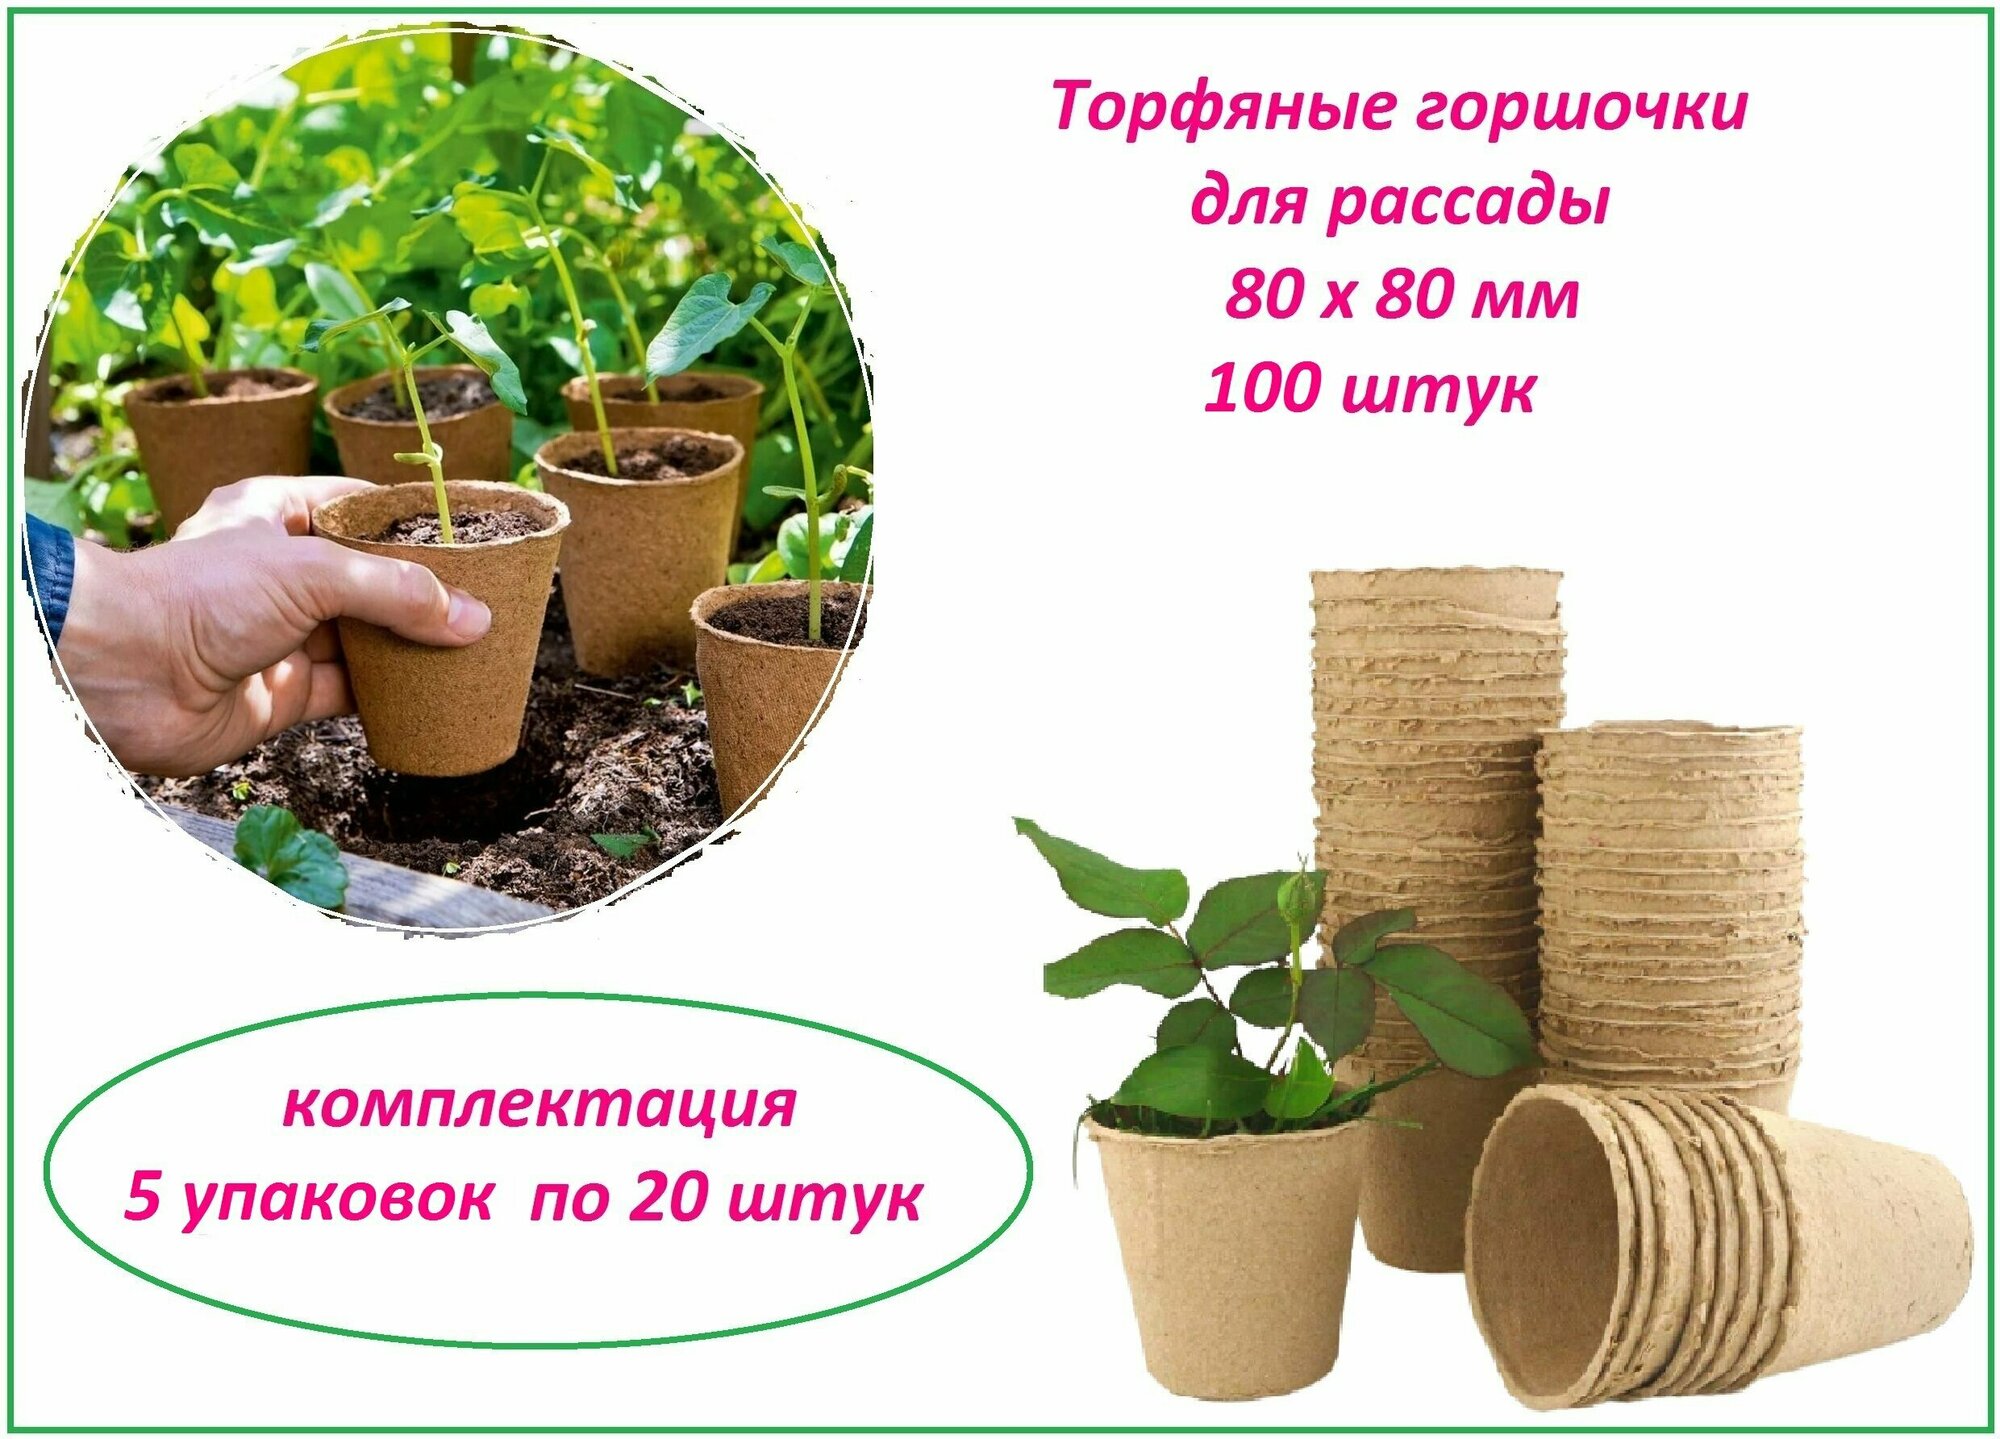 Торфяные горшочки для рассады, набор стаканчиков 100 штук, d 80 х h 80 мм, для выращивания рассады всех видов садовых и комнатных растений